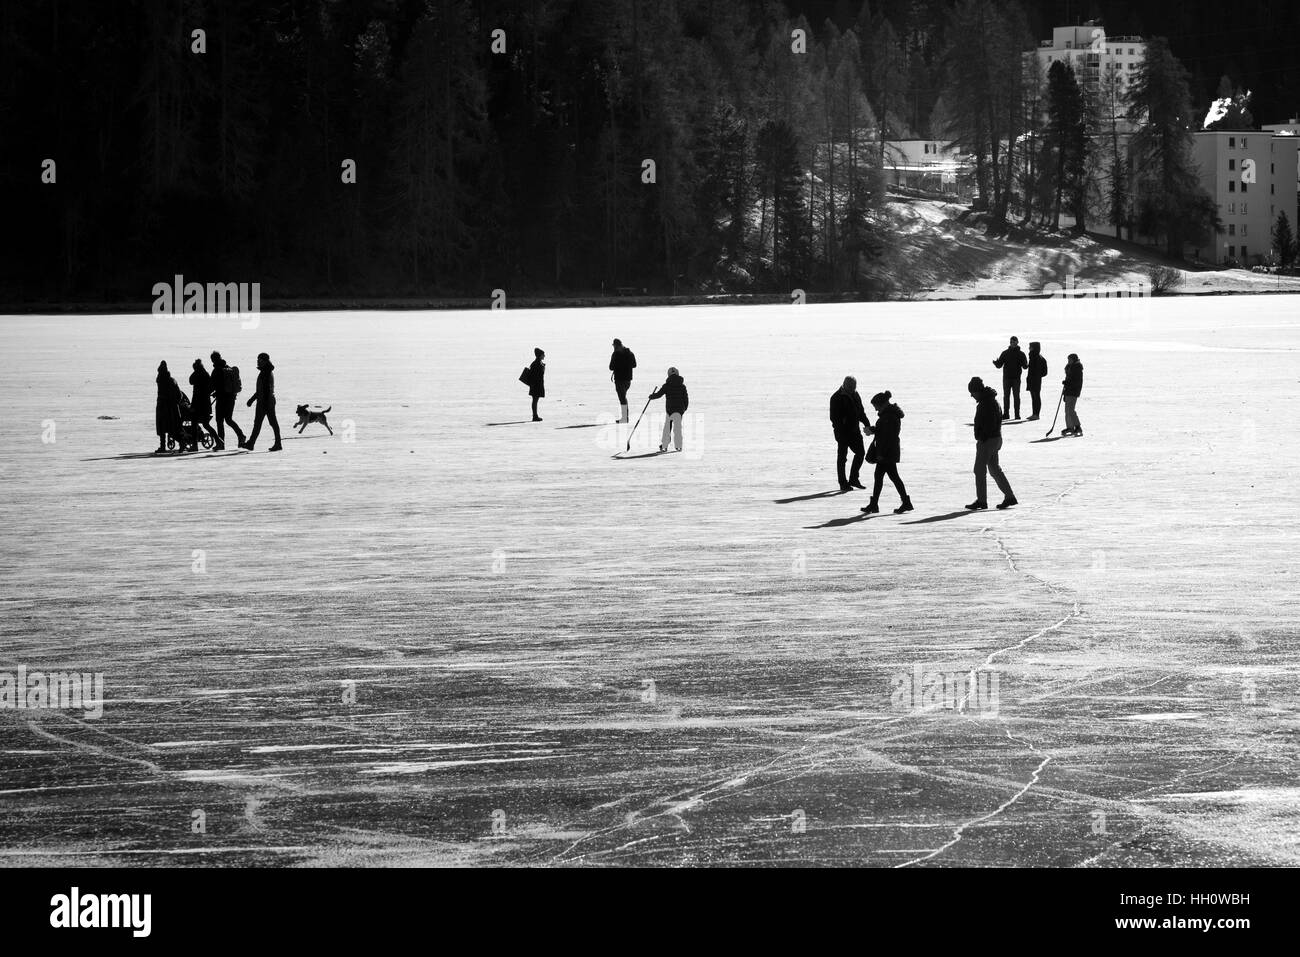 La silhouette du groupe des personnes et des animaux de marcher sur un lac gelé en hiver avec les bâtiments urbains dans l'arrière-plan Banque D'Images